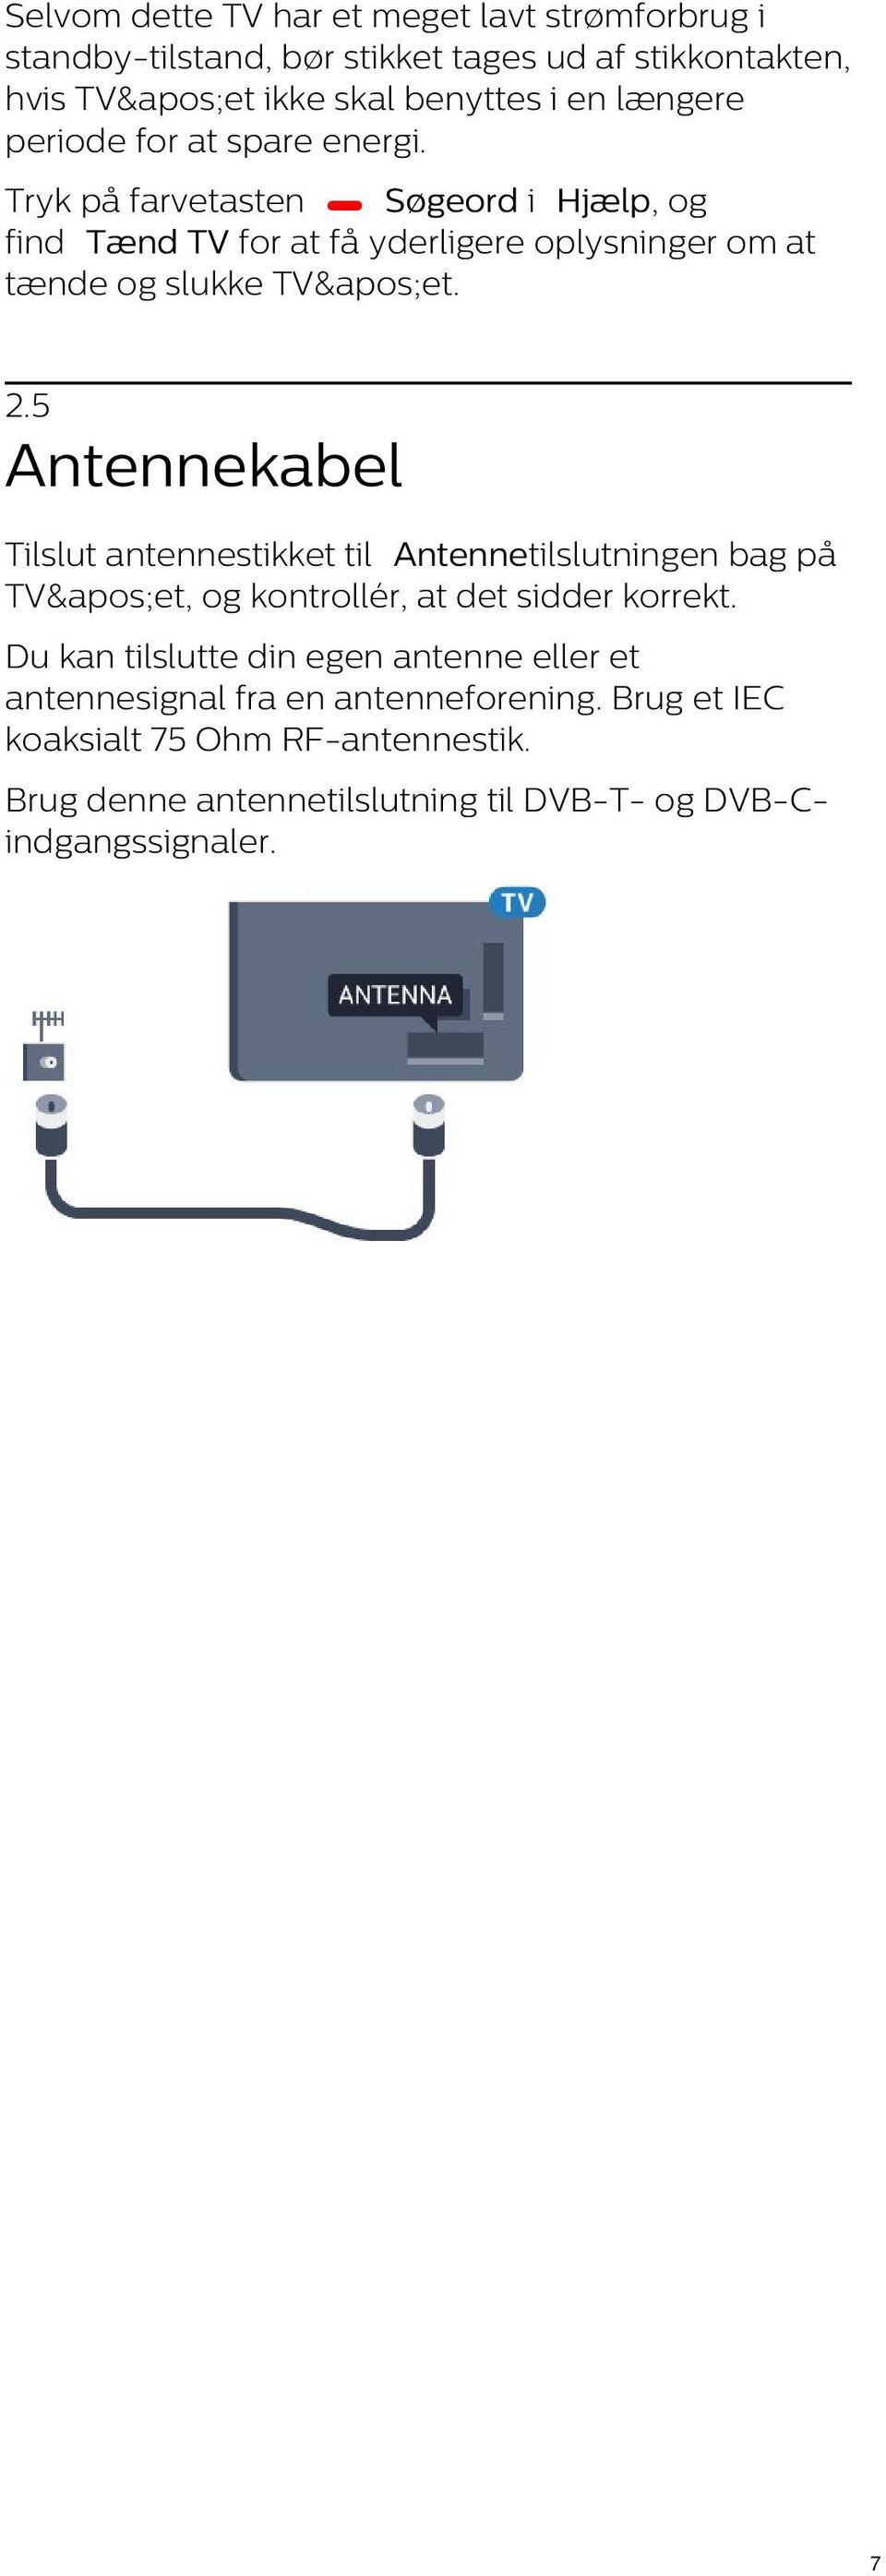 5 Antennekabel Tilslut antennestikket til Antennetilslutningen bag på TV&apos;et, og kontrollér, at det sidder korrekt.